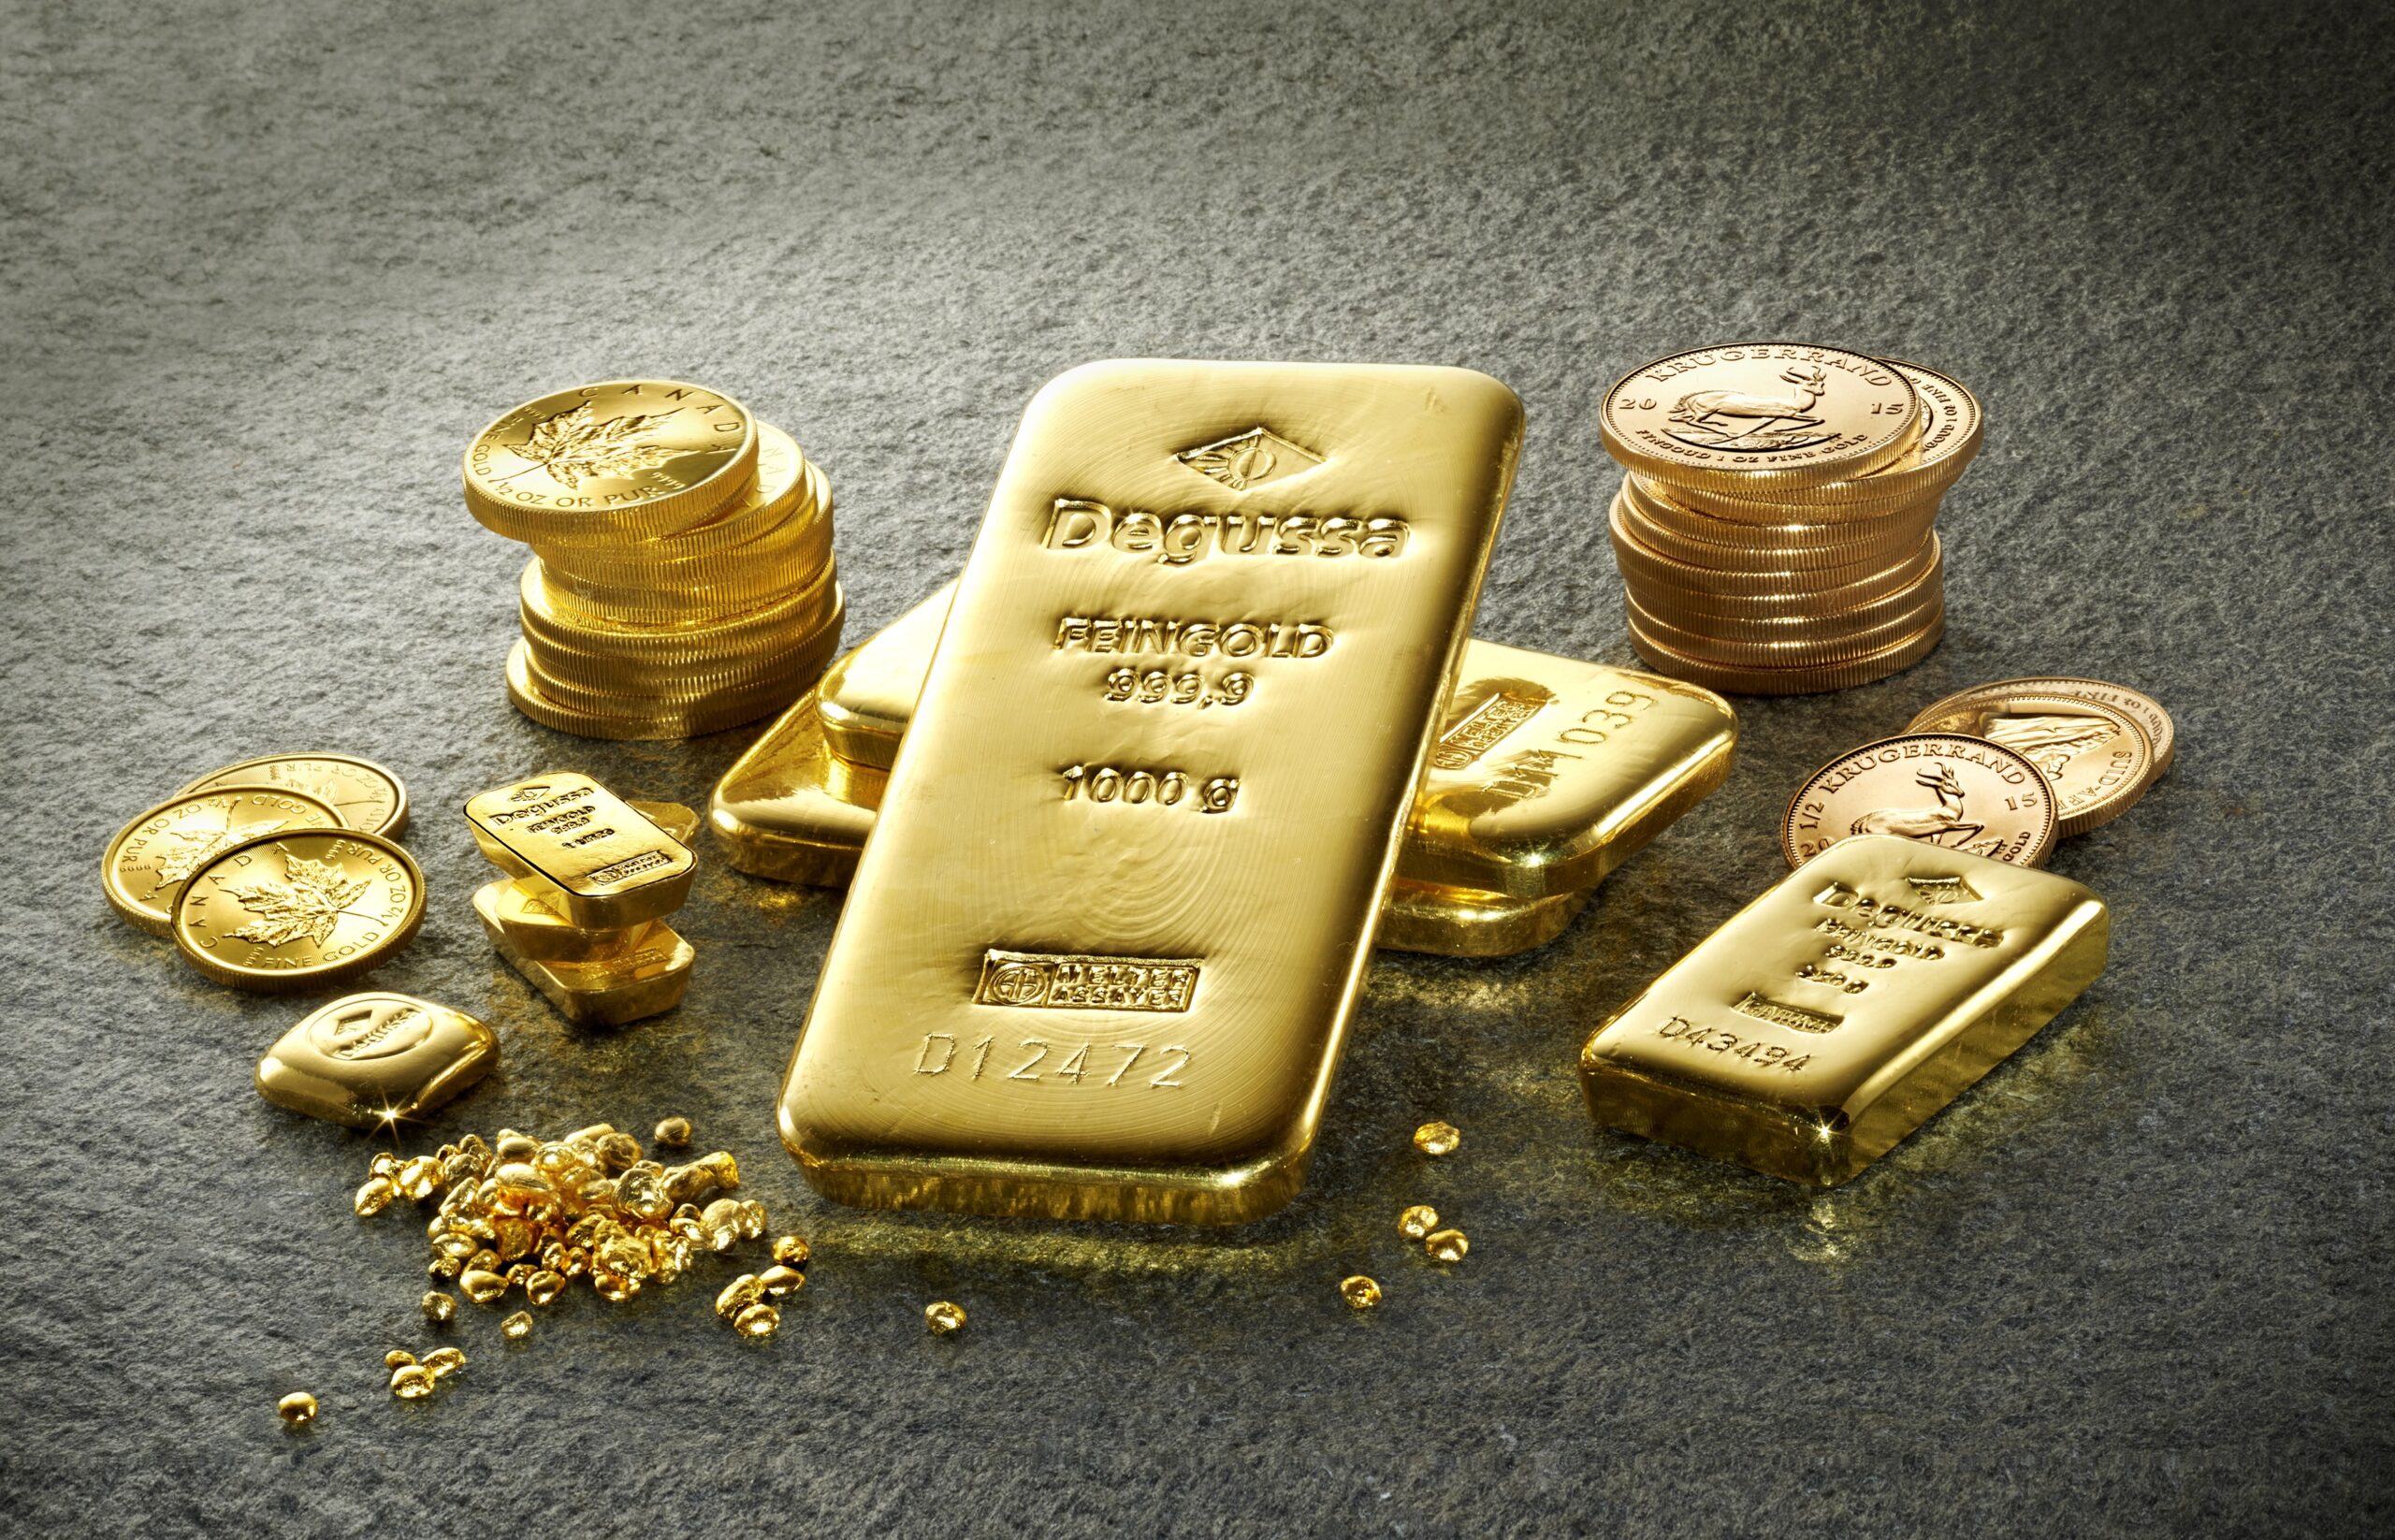 PT vàng: Hỗ trợ ban đầu của (XAU/USD) tại 1760$ trước nguy cơ giá giảm về 1740$